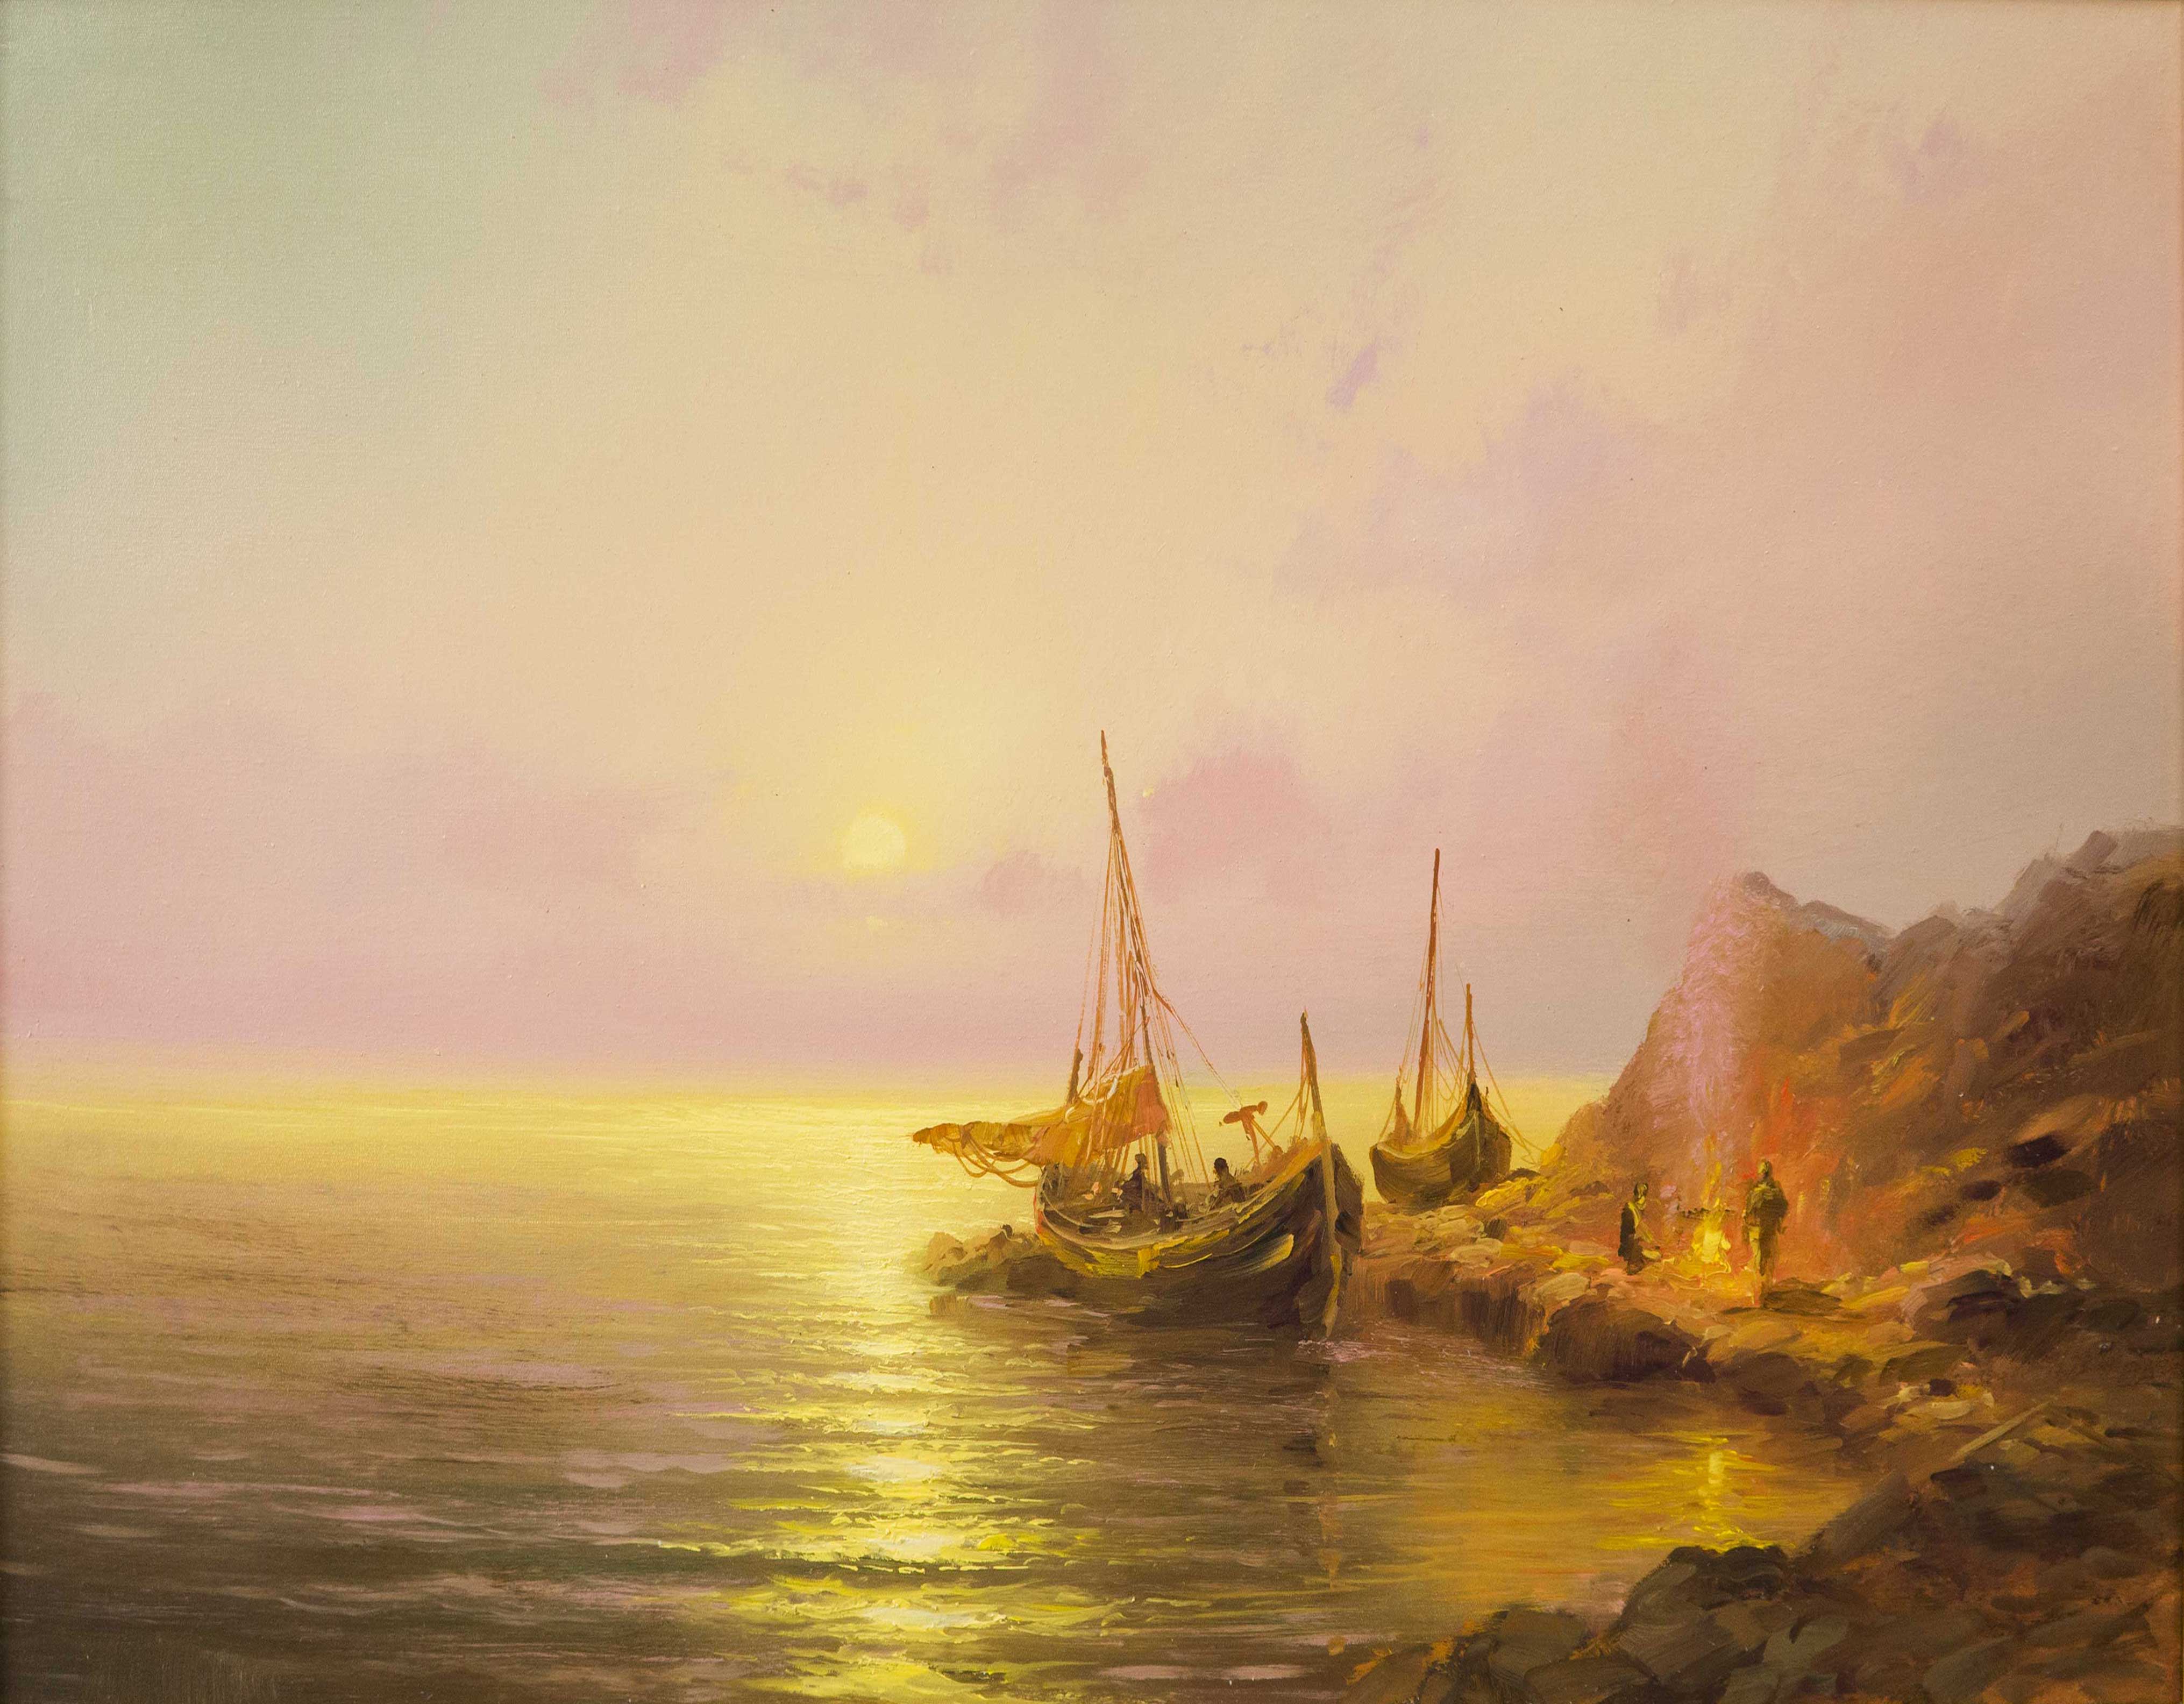 Sailboat - 1, Dmitry Balakhonov, Buy the painting Oil